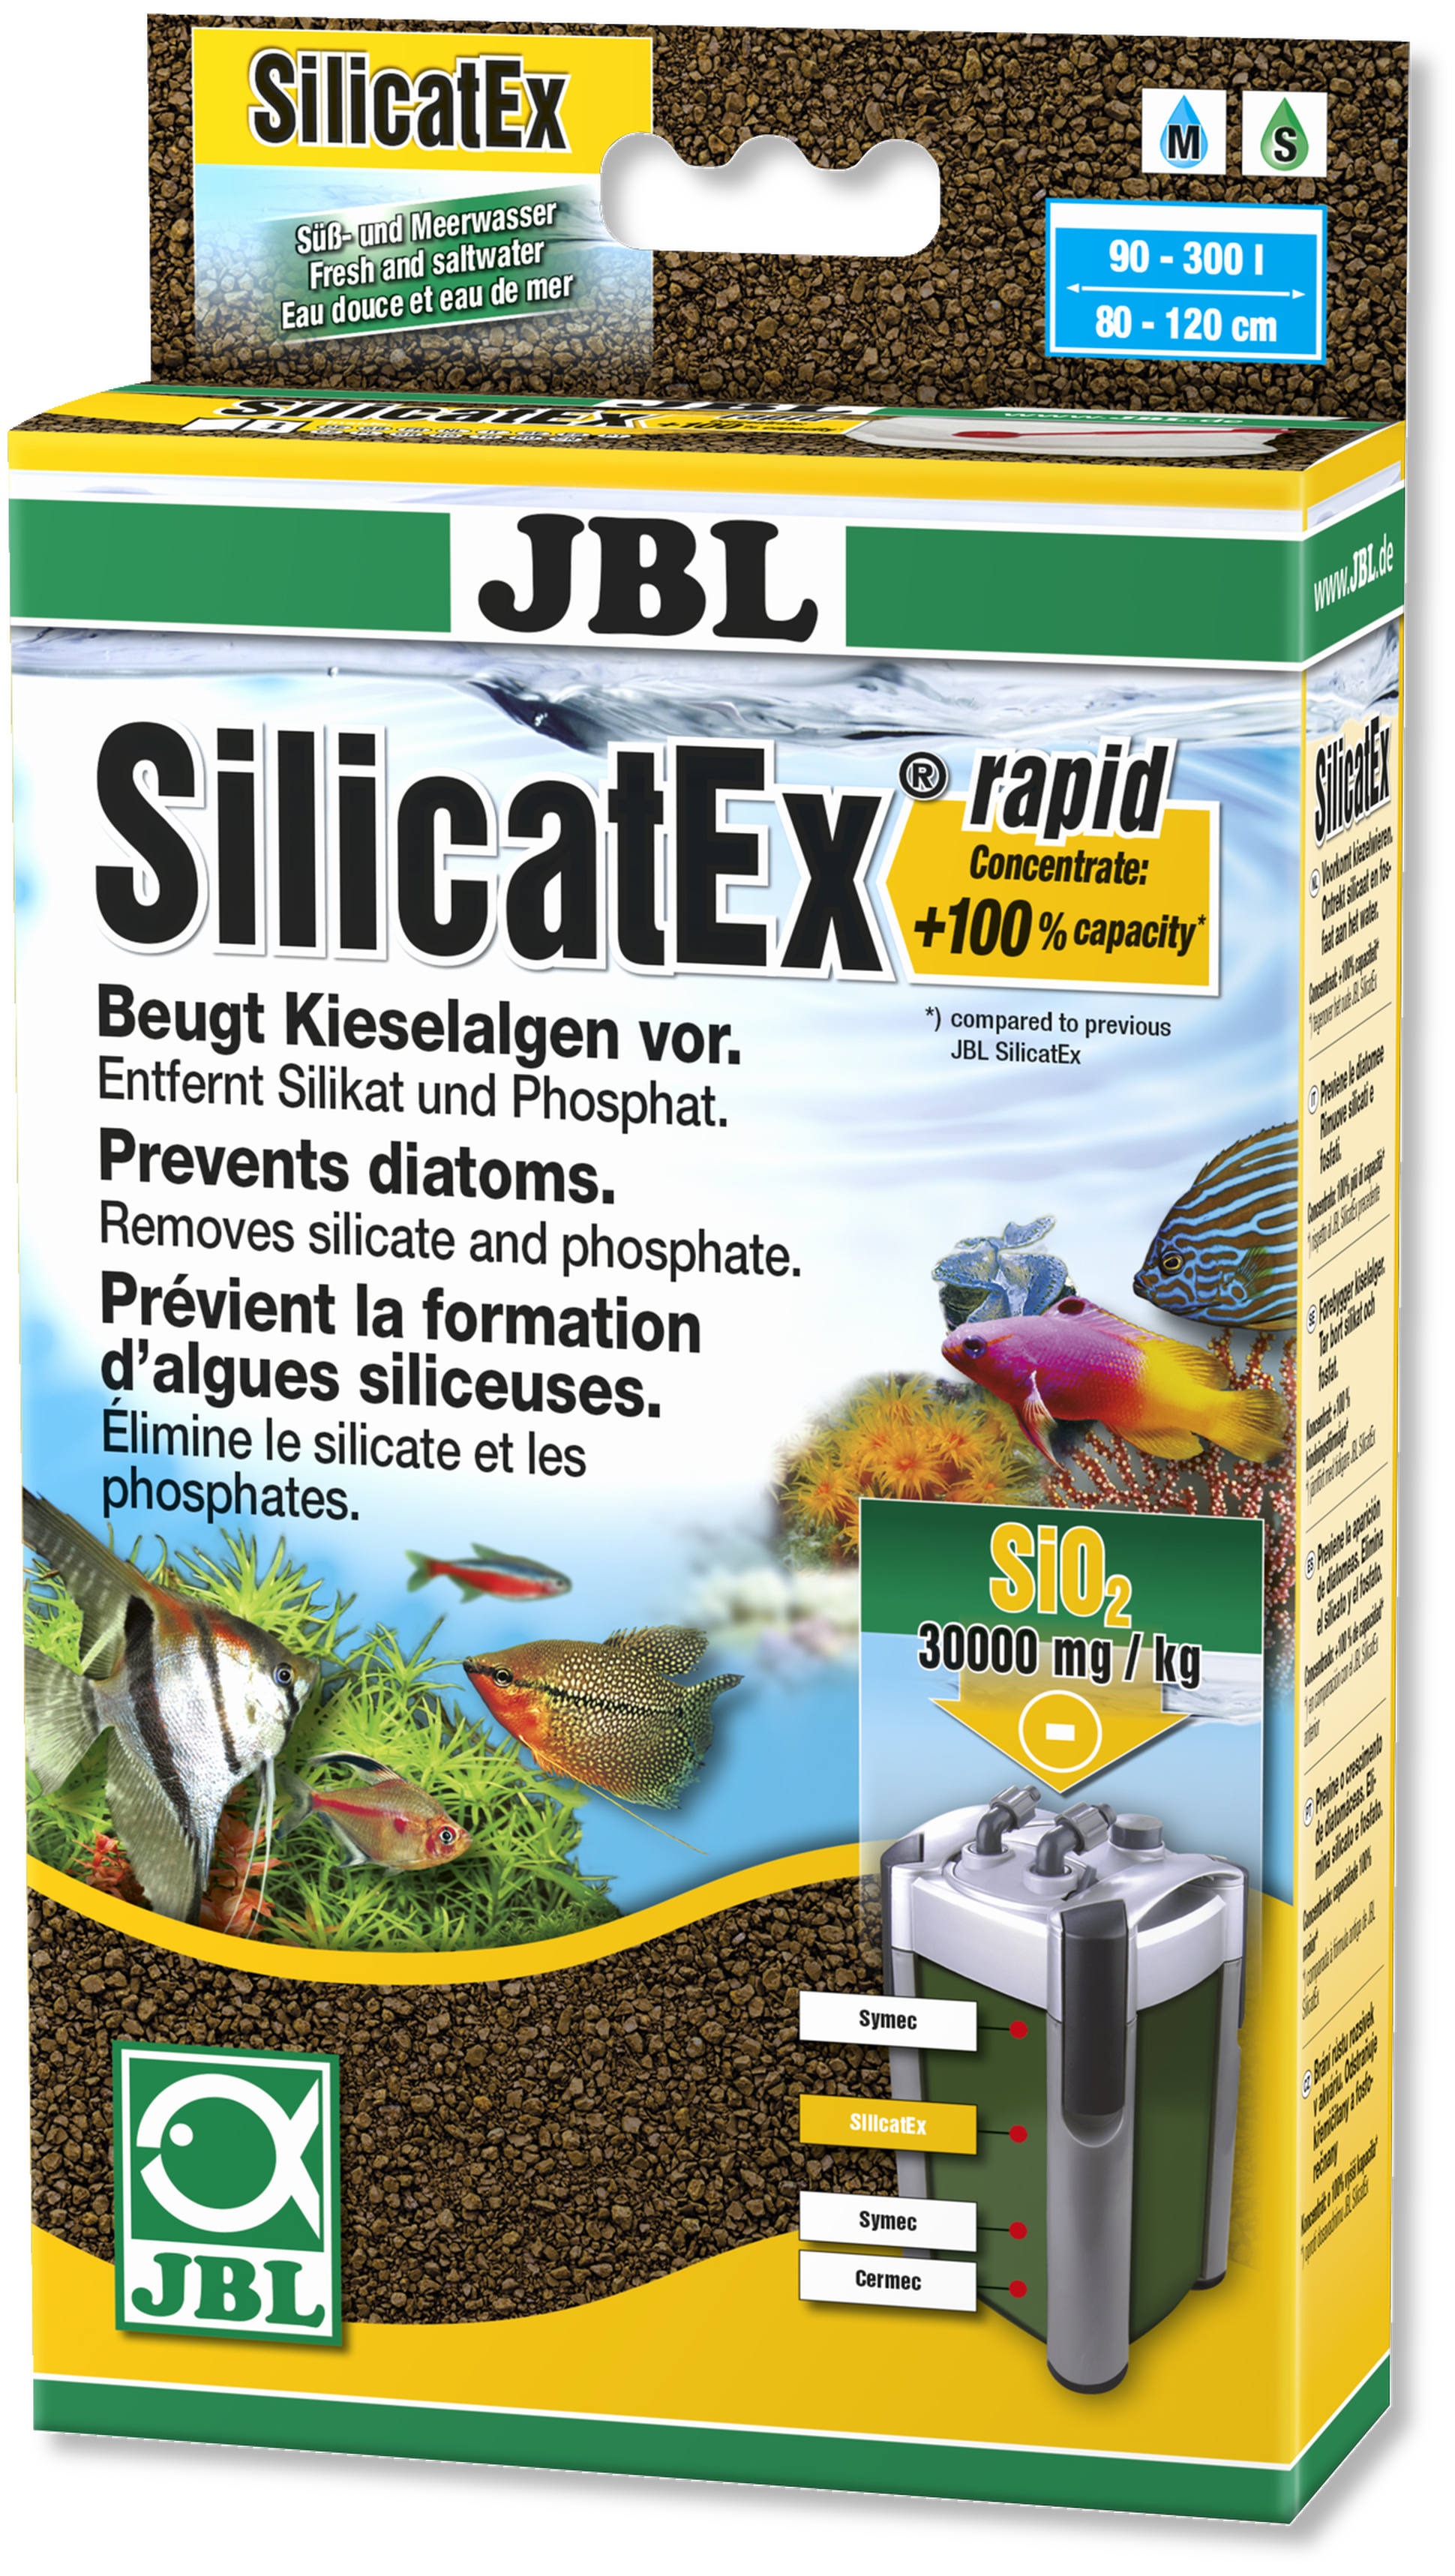 JBL SilikatEx Rapid, braun, Filtermaterial für 200-400 l, 400 g